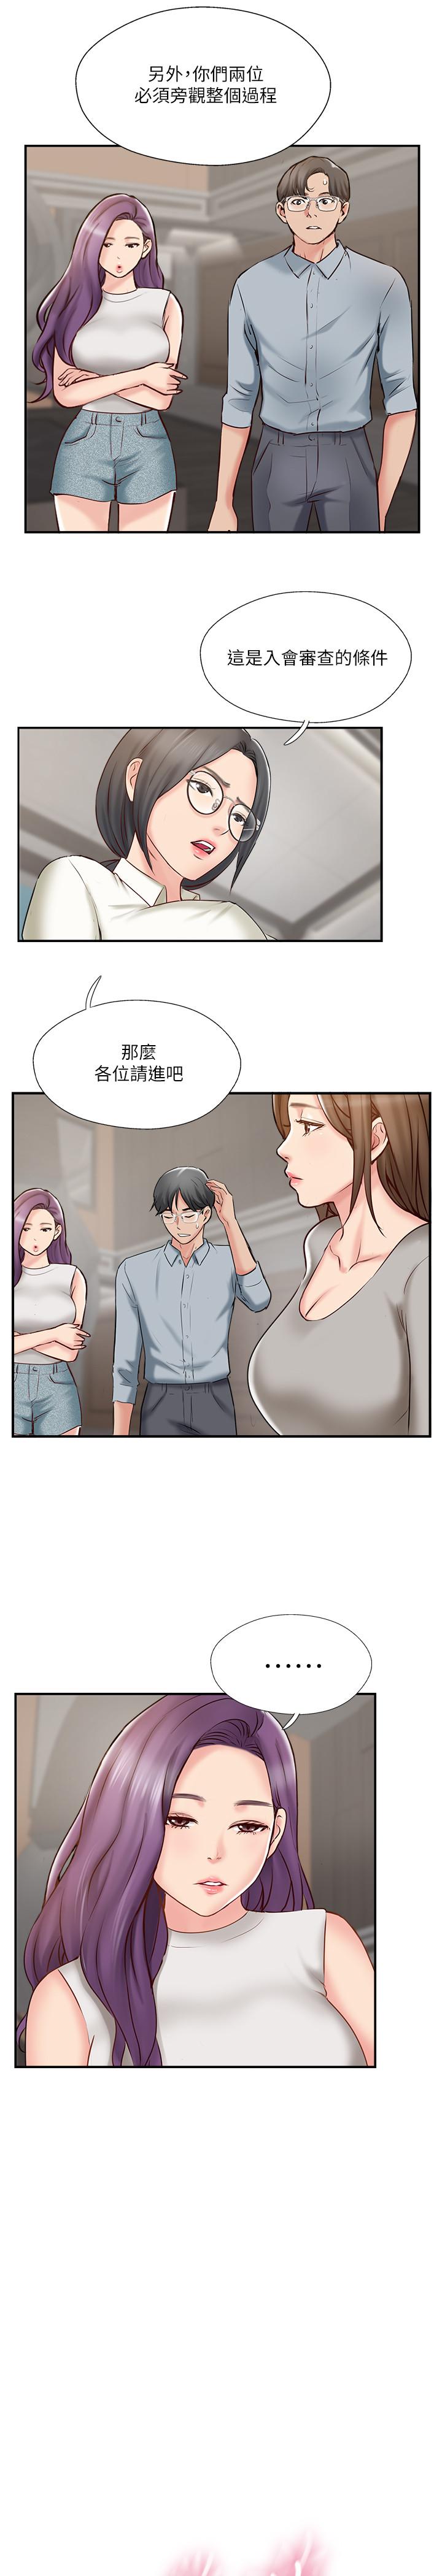 韩国污漫画 完美新伴侶 第41话-看着老婆被上而兴奋 11